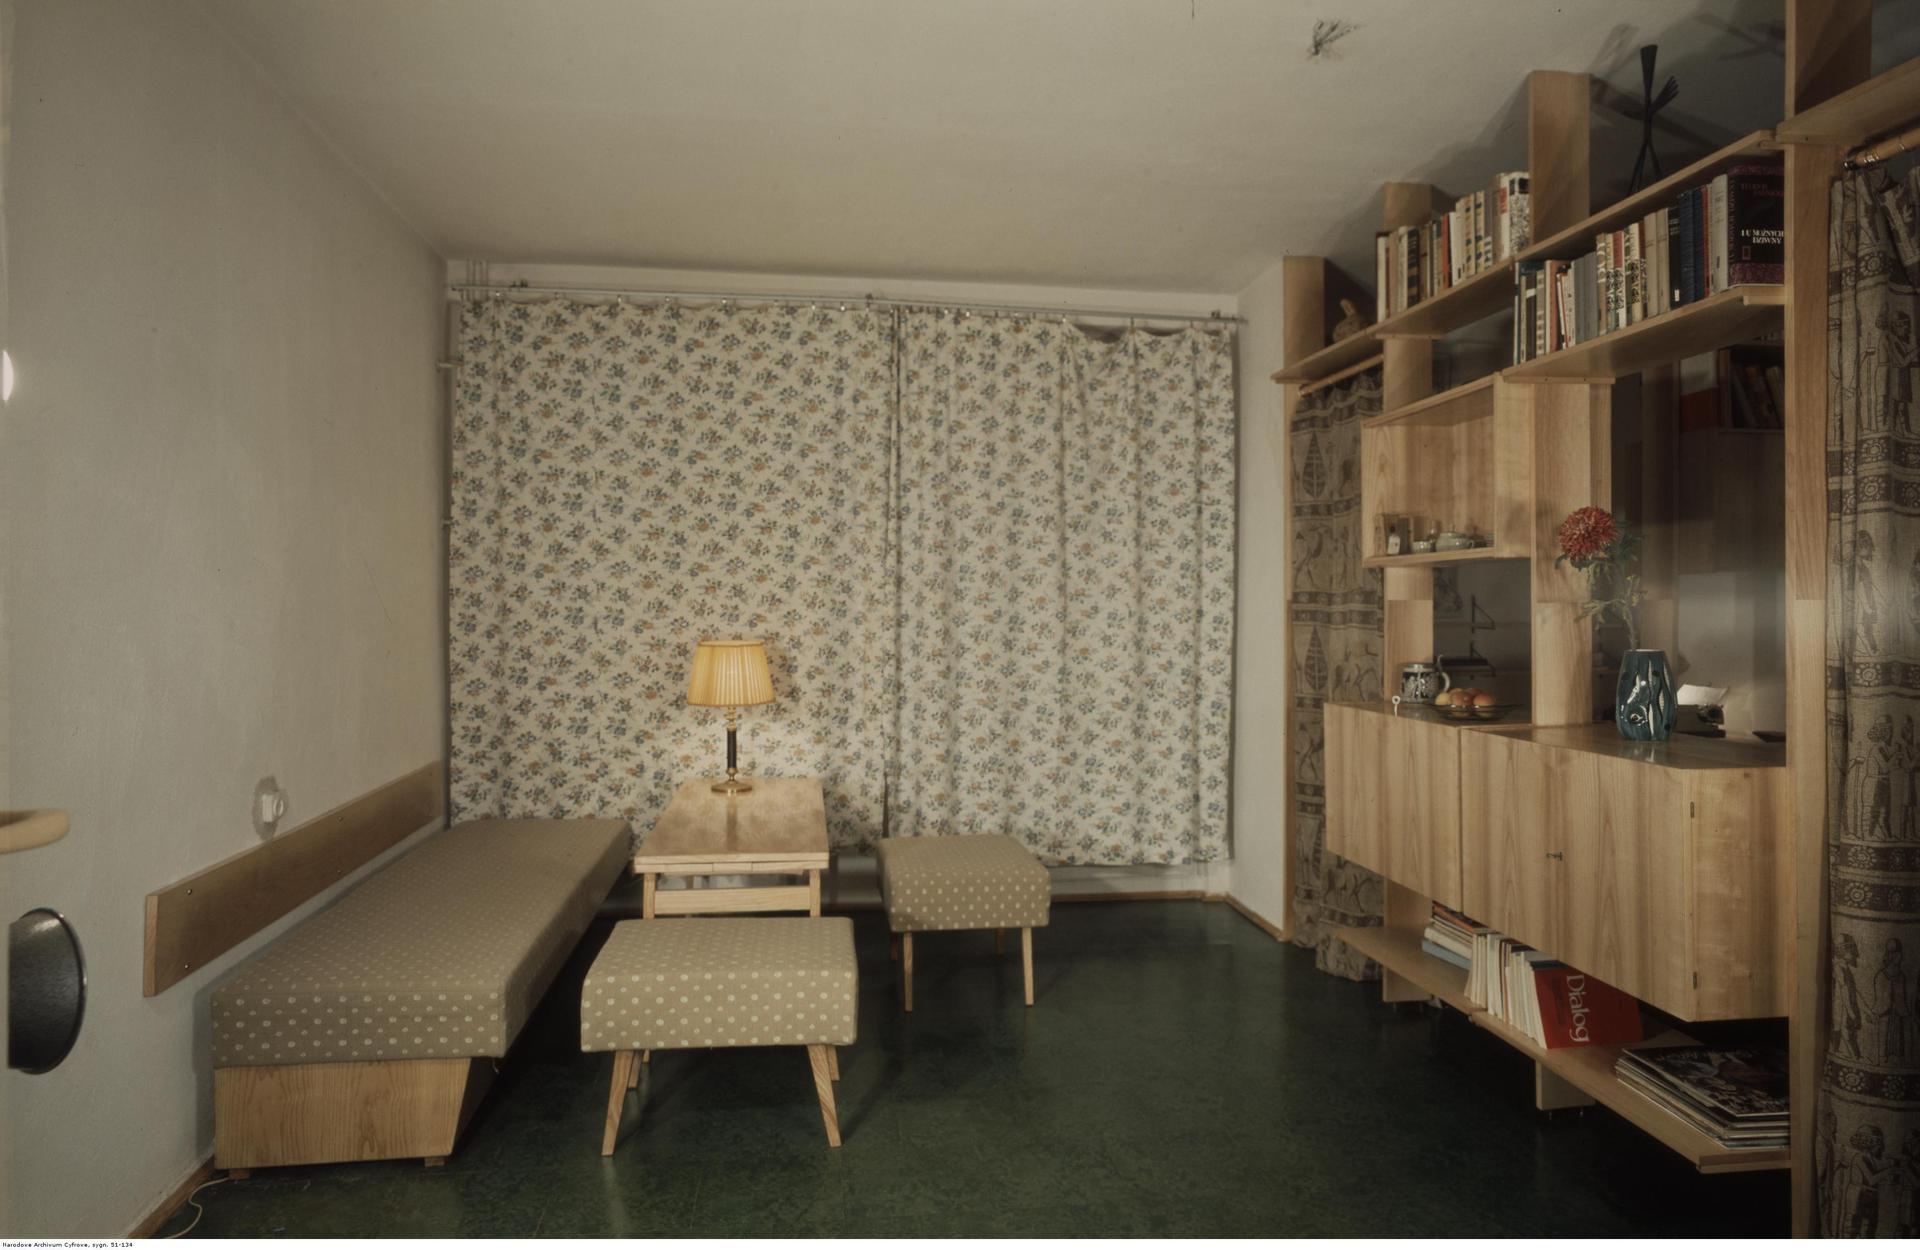 Jak wyglądało typowe mieszkanie w PRL? Mamy mnóstwo zdjęć z archiwum!